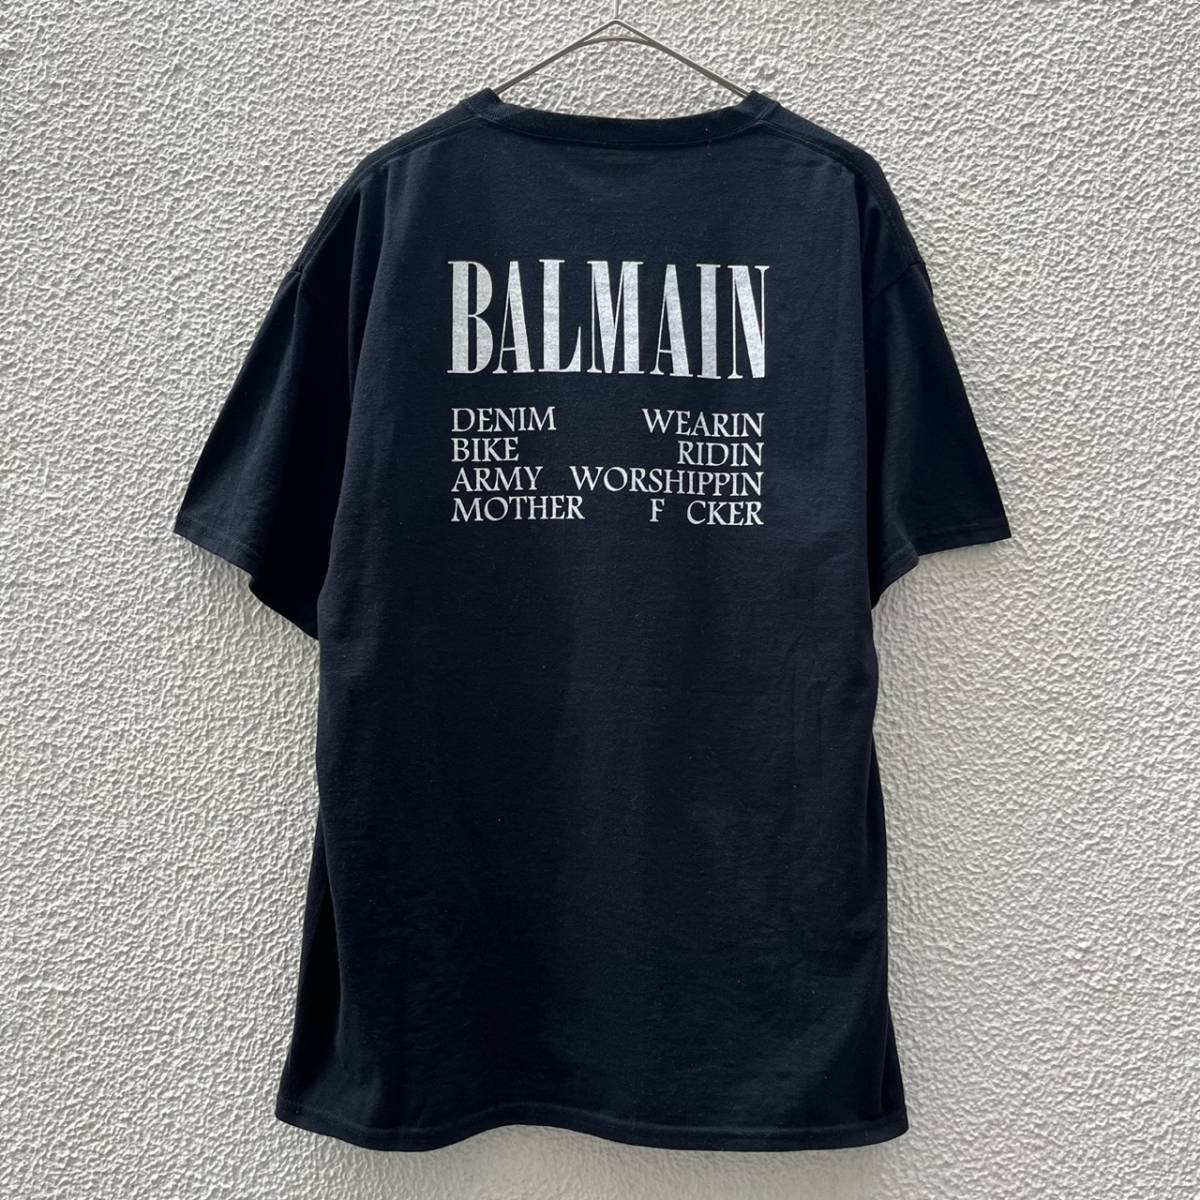 BLEACH ブリーチ Lサイズ Tシャツ パロディ バルマン ピエールバルマン